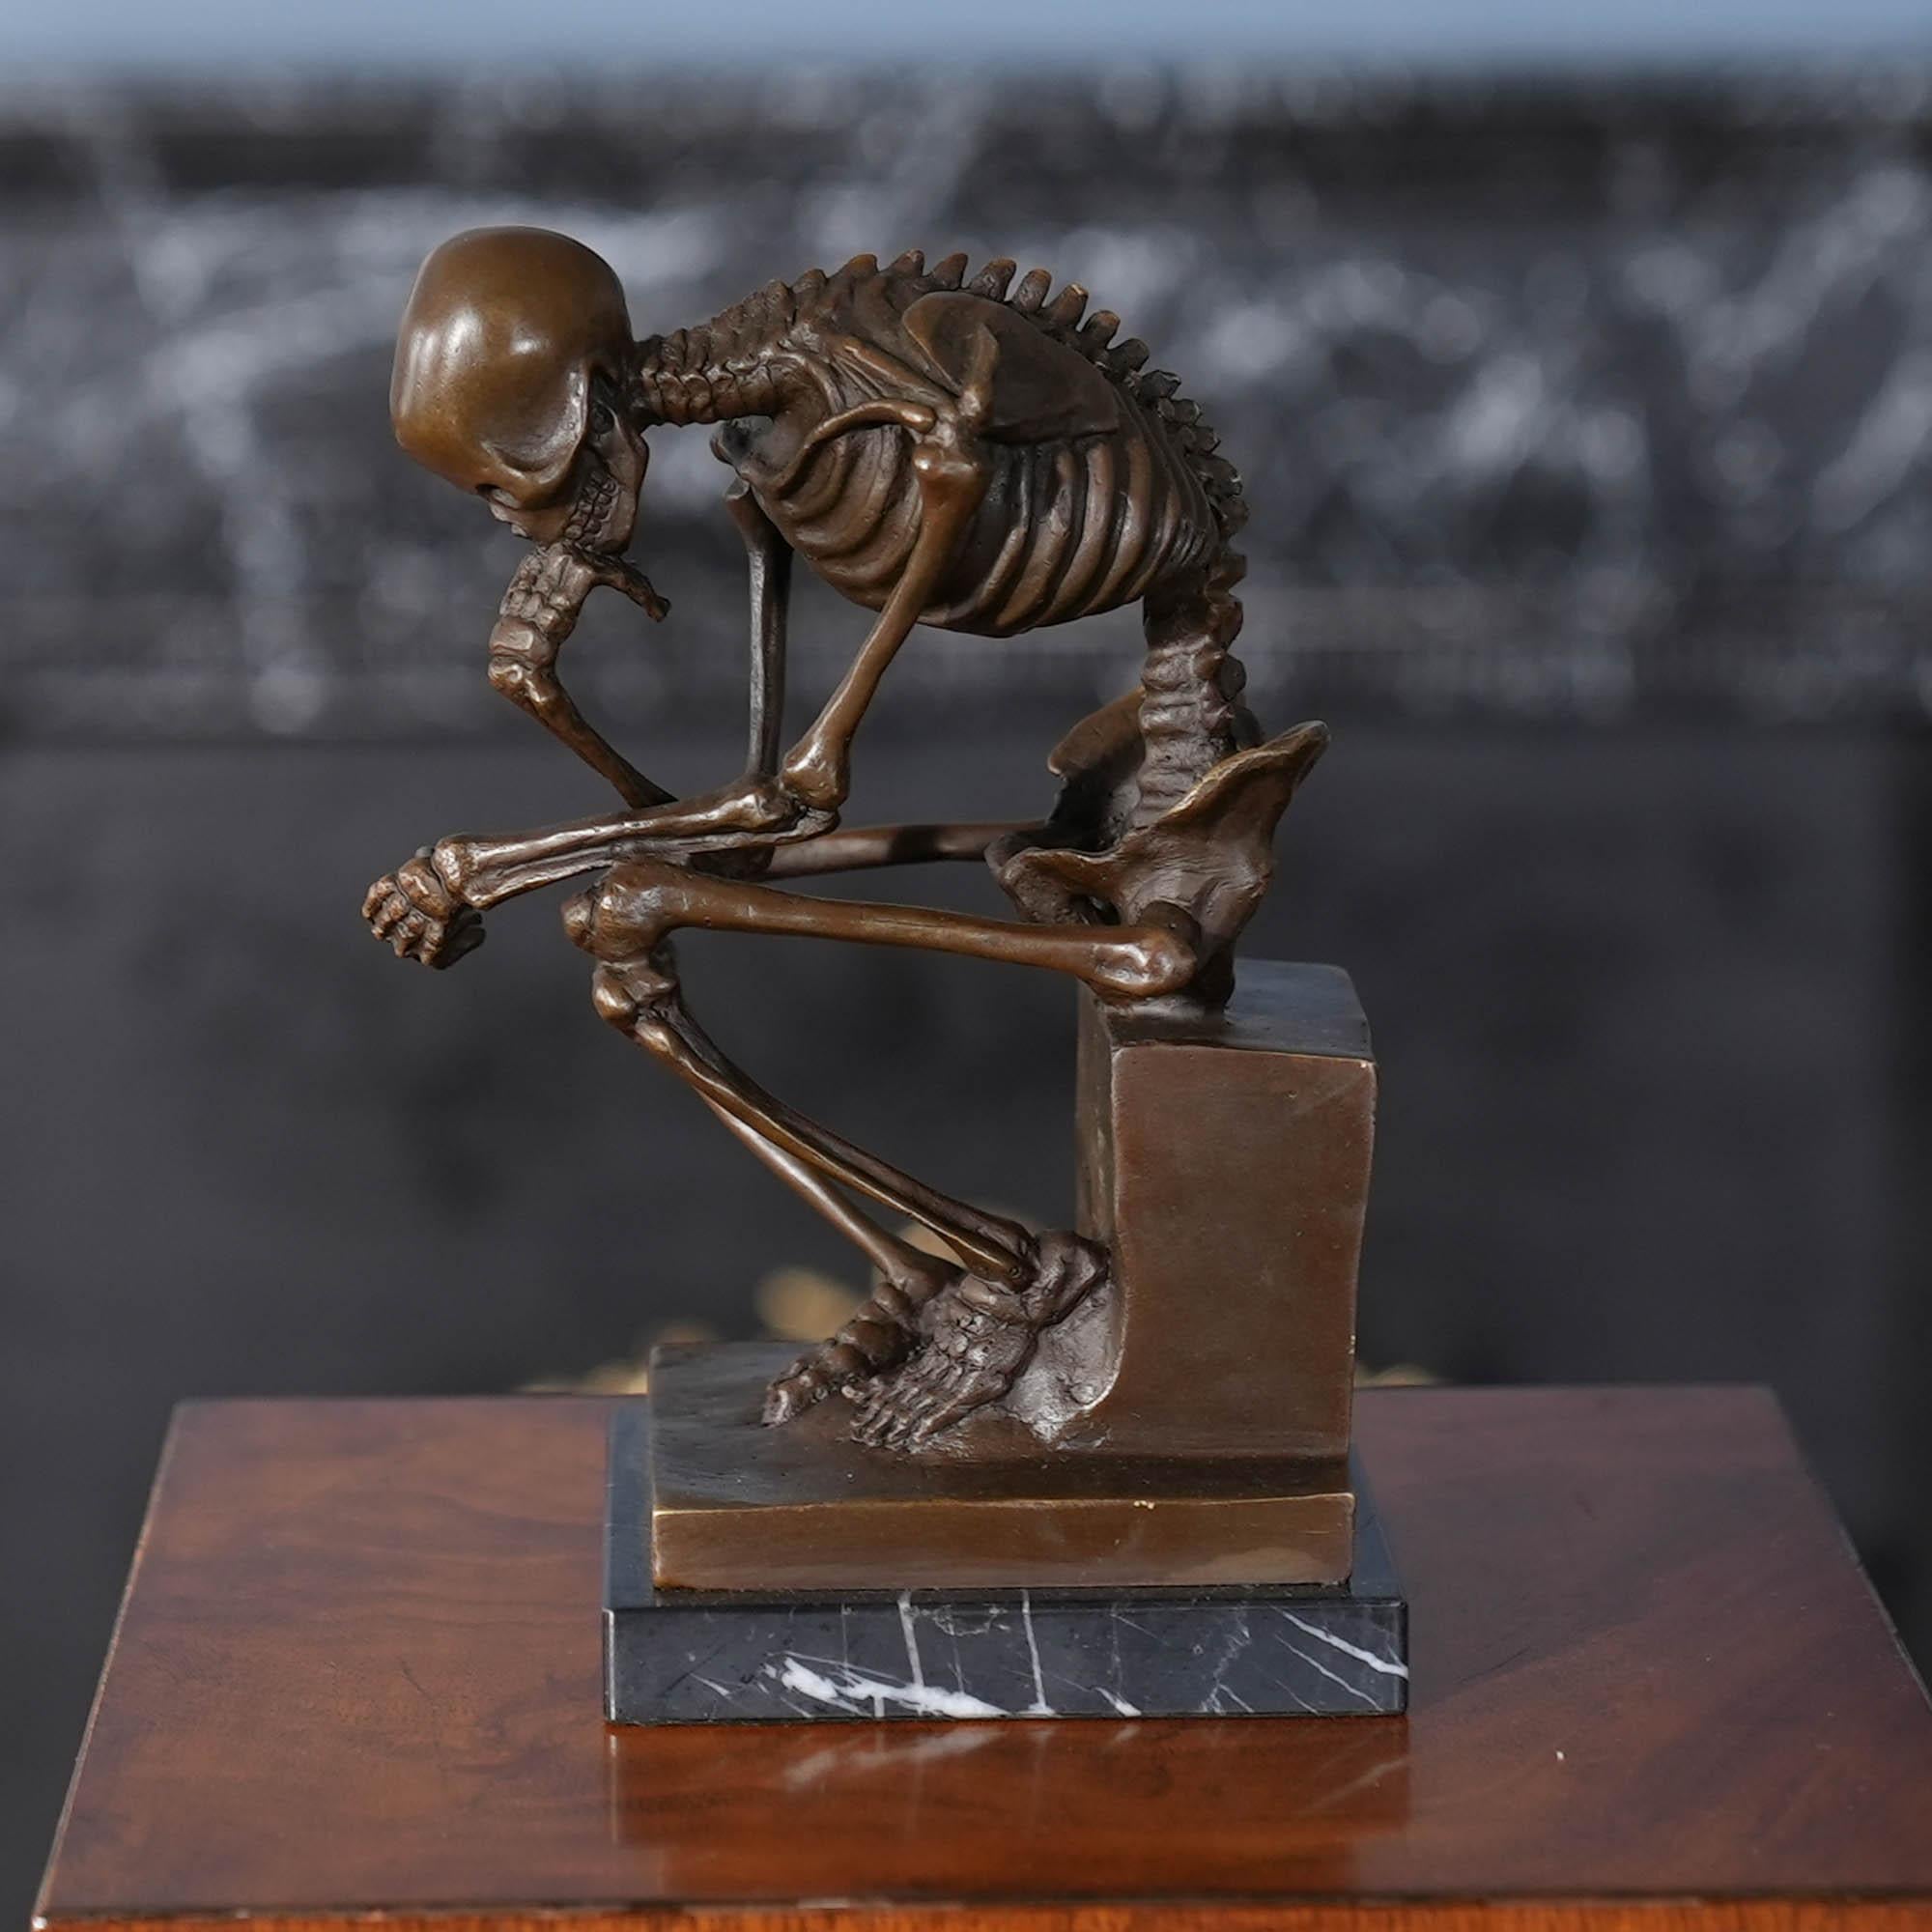 Der Skelett-Denker aus Bronze auf einem Marmorsockel ist selbst im Stillstand anmutig und passt in jede Umgebung. Die Bronzestatue des Skelett-Denkers wurde im traditionellen Wachsausschmelzverfahren gegossen und mit handgefertigten Details